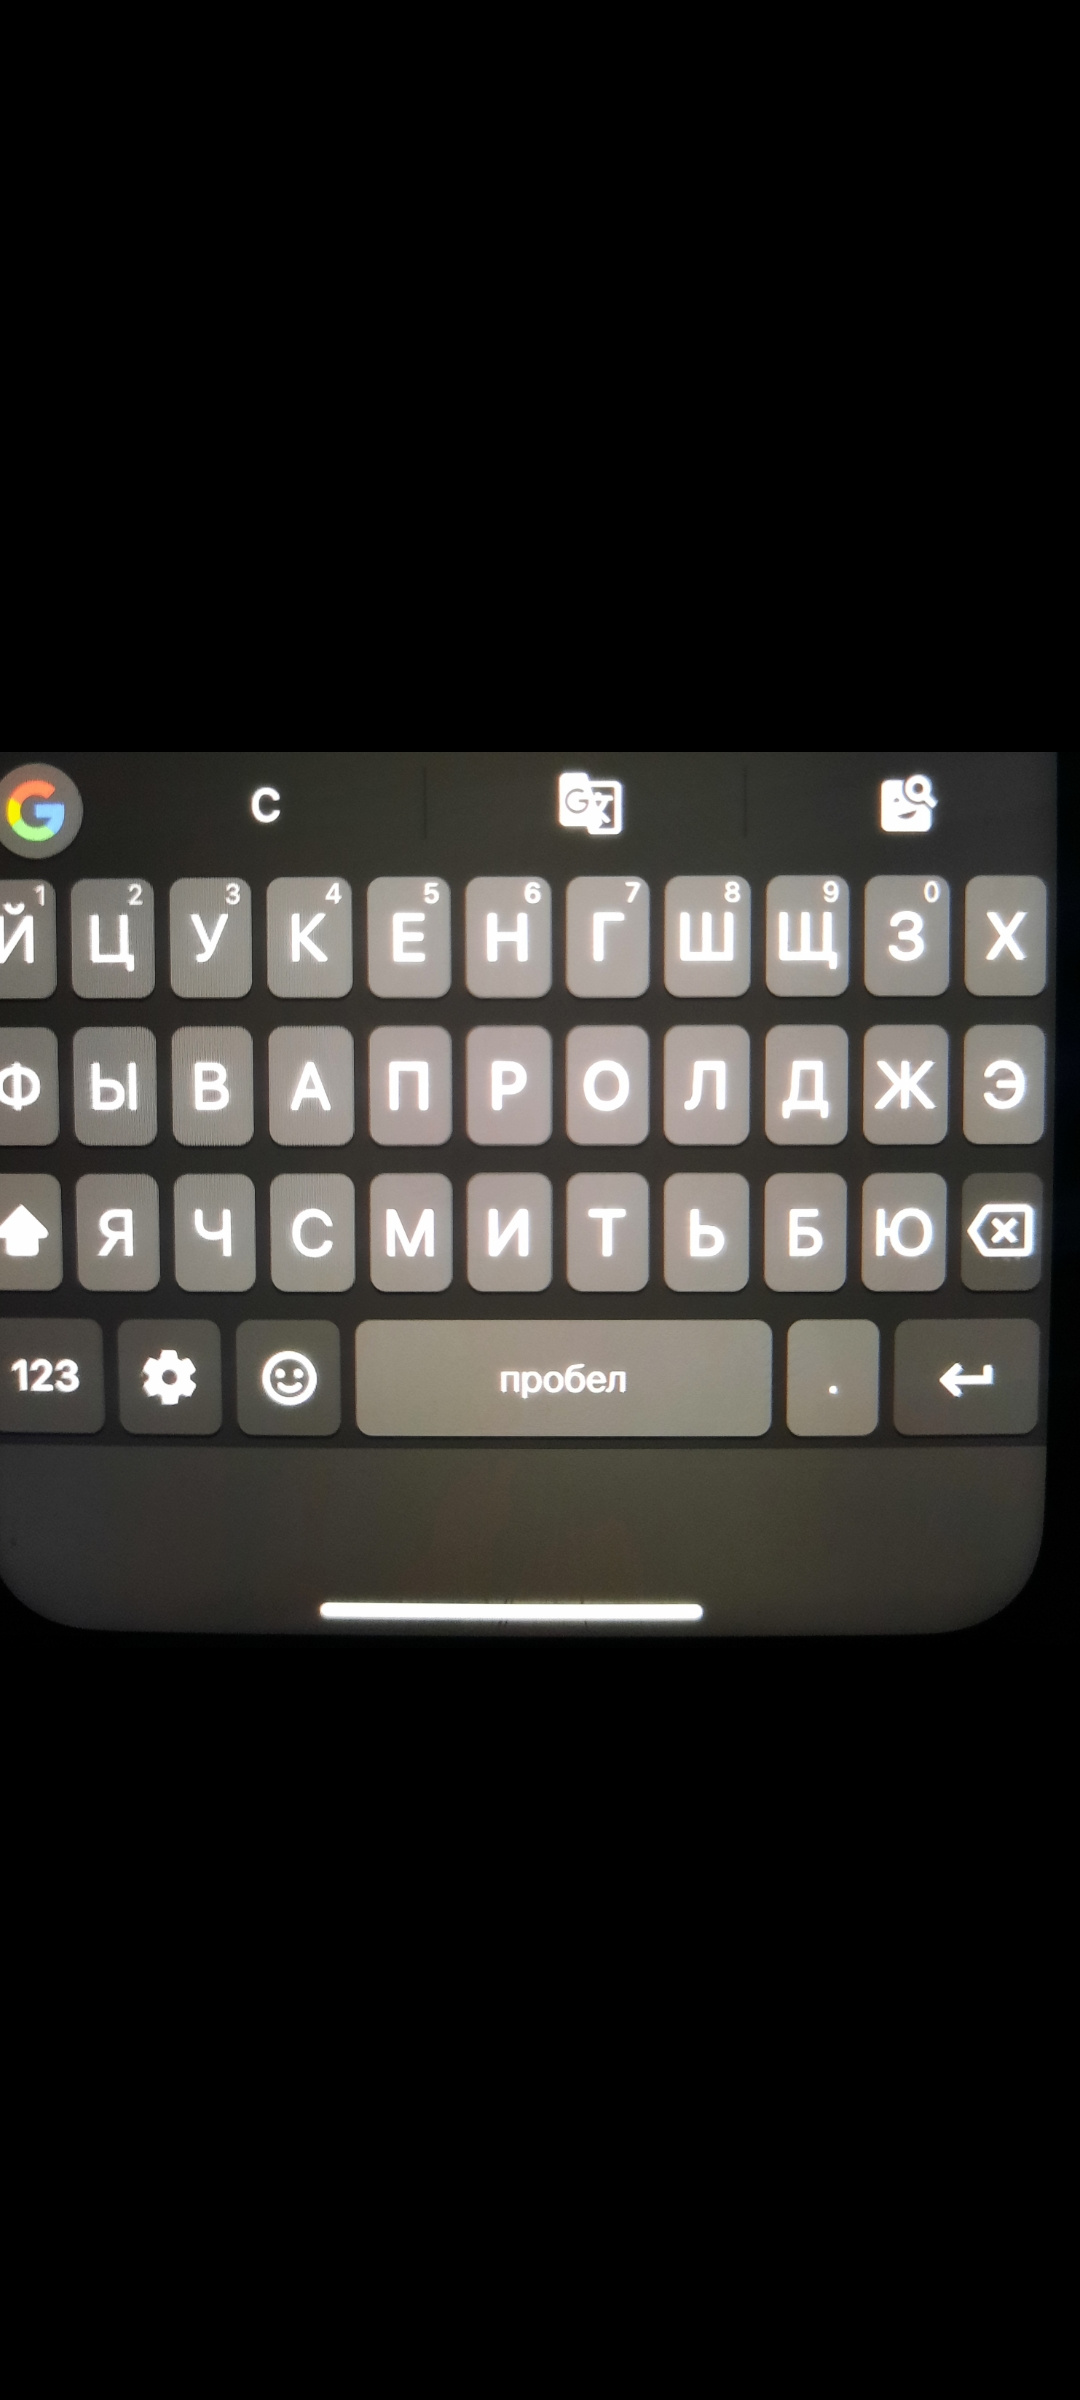 Как создать клавиатуру для iPhone: пошаговая инструкция